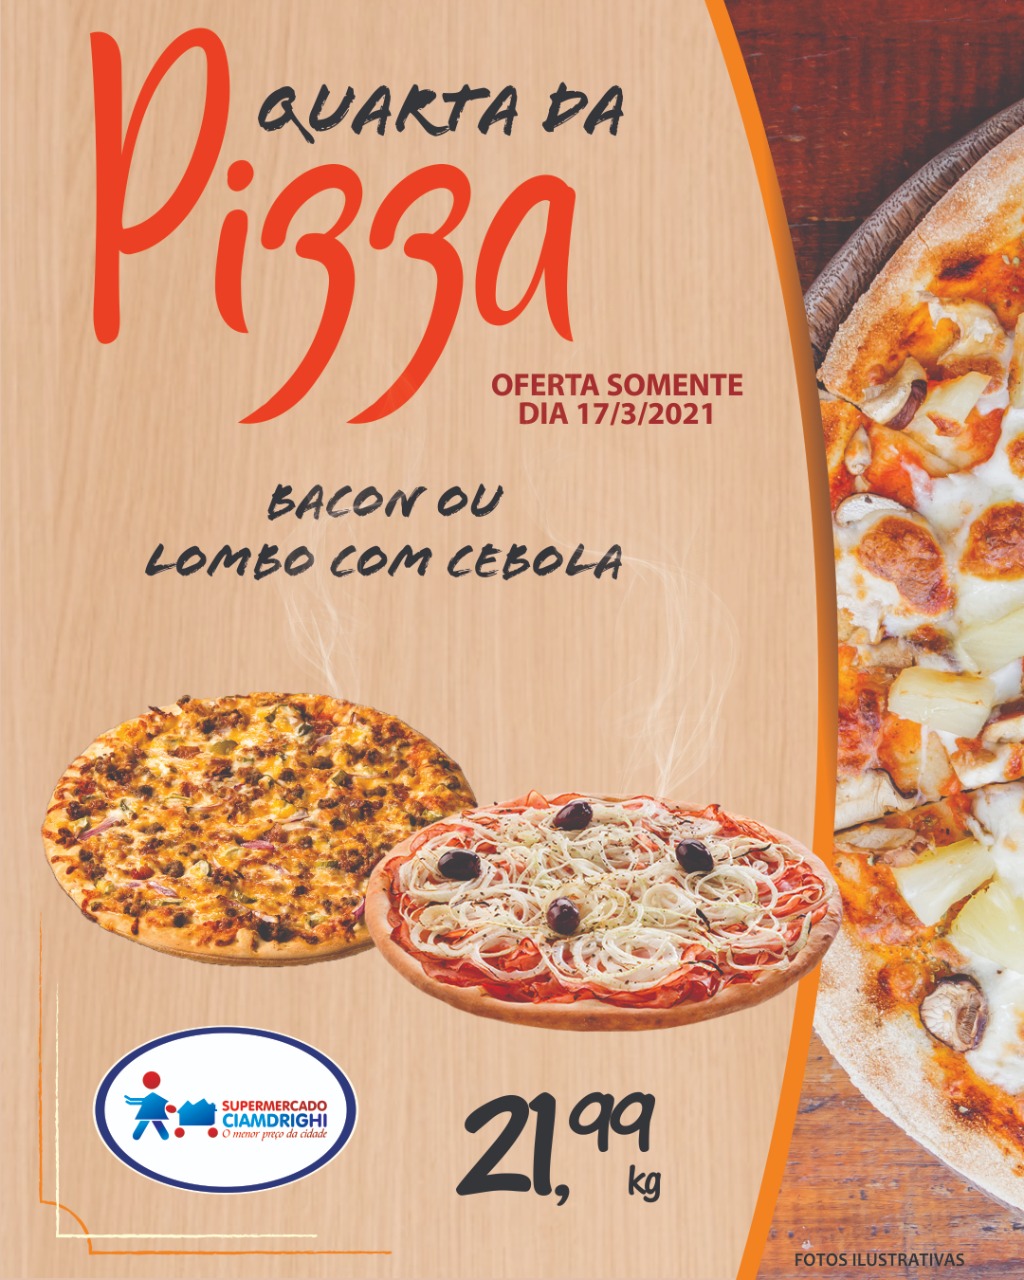 Ciamdrighi tem quarta-feira de ofertas em pizzas e hortifrúti